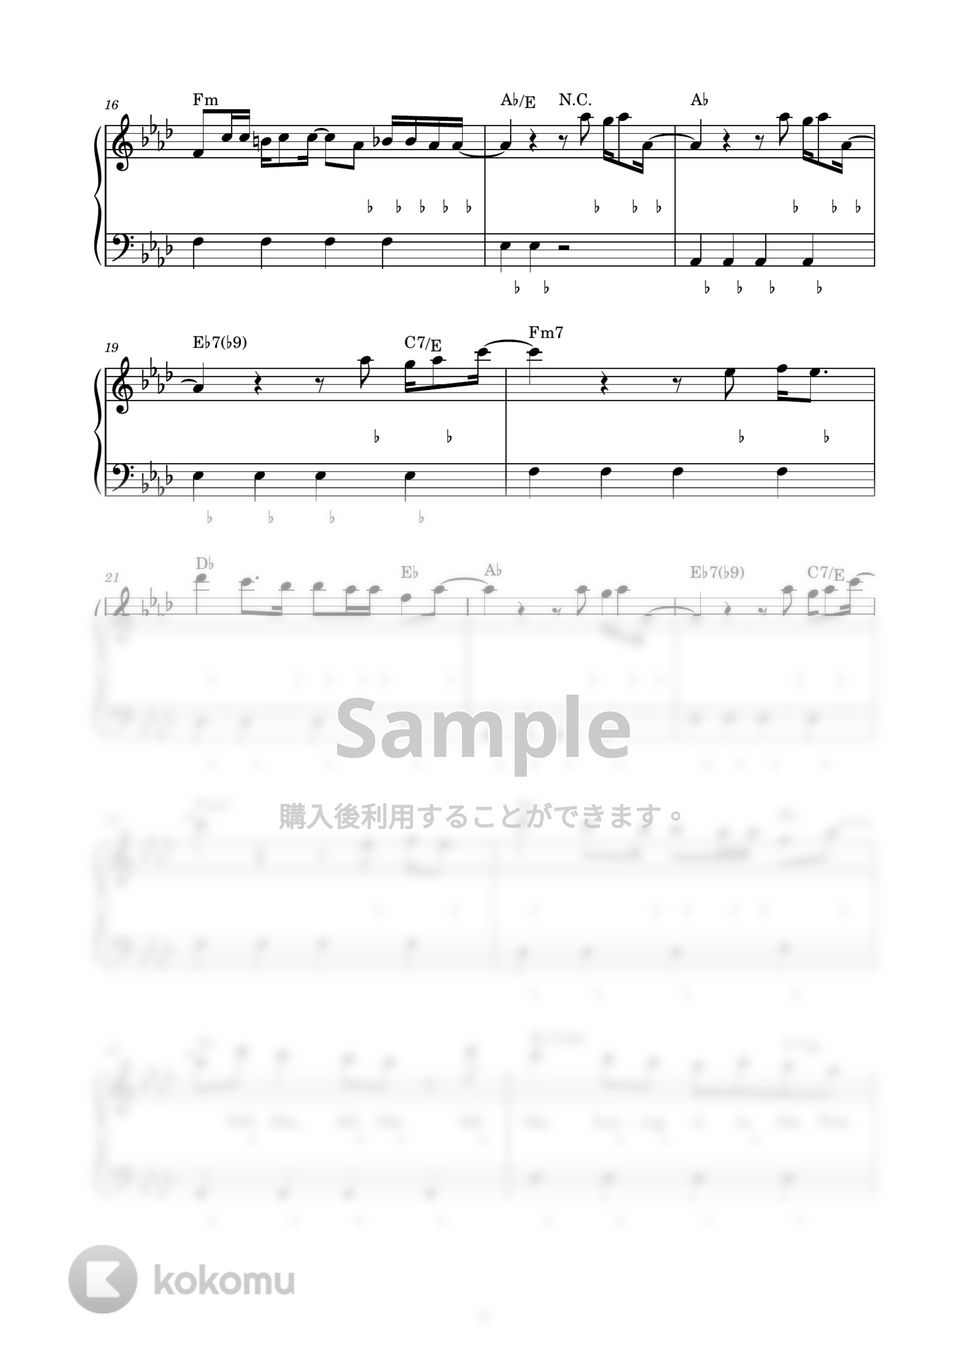 milet×Aimer×幾田りら - おもかげ (ピアノ楽譜 / かんたん両手 / 歌詞付き / ドレミ付き / 初心者向き) by piano.tokyo